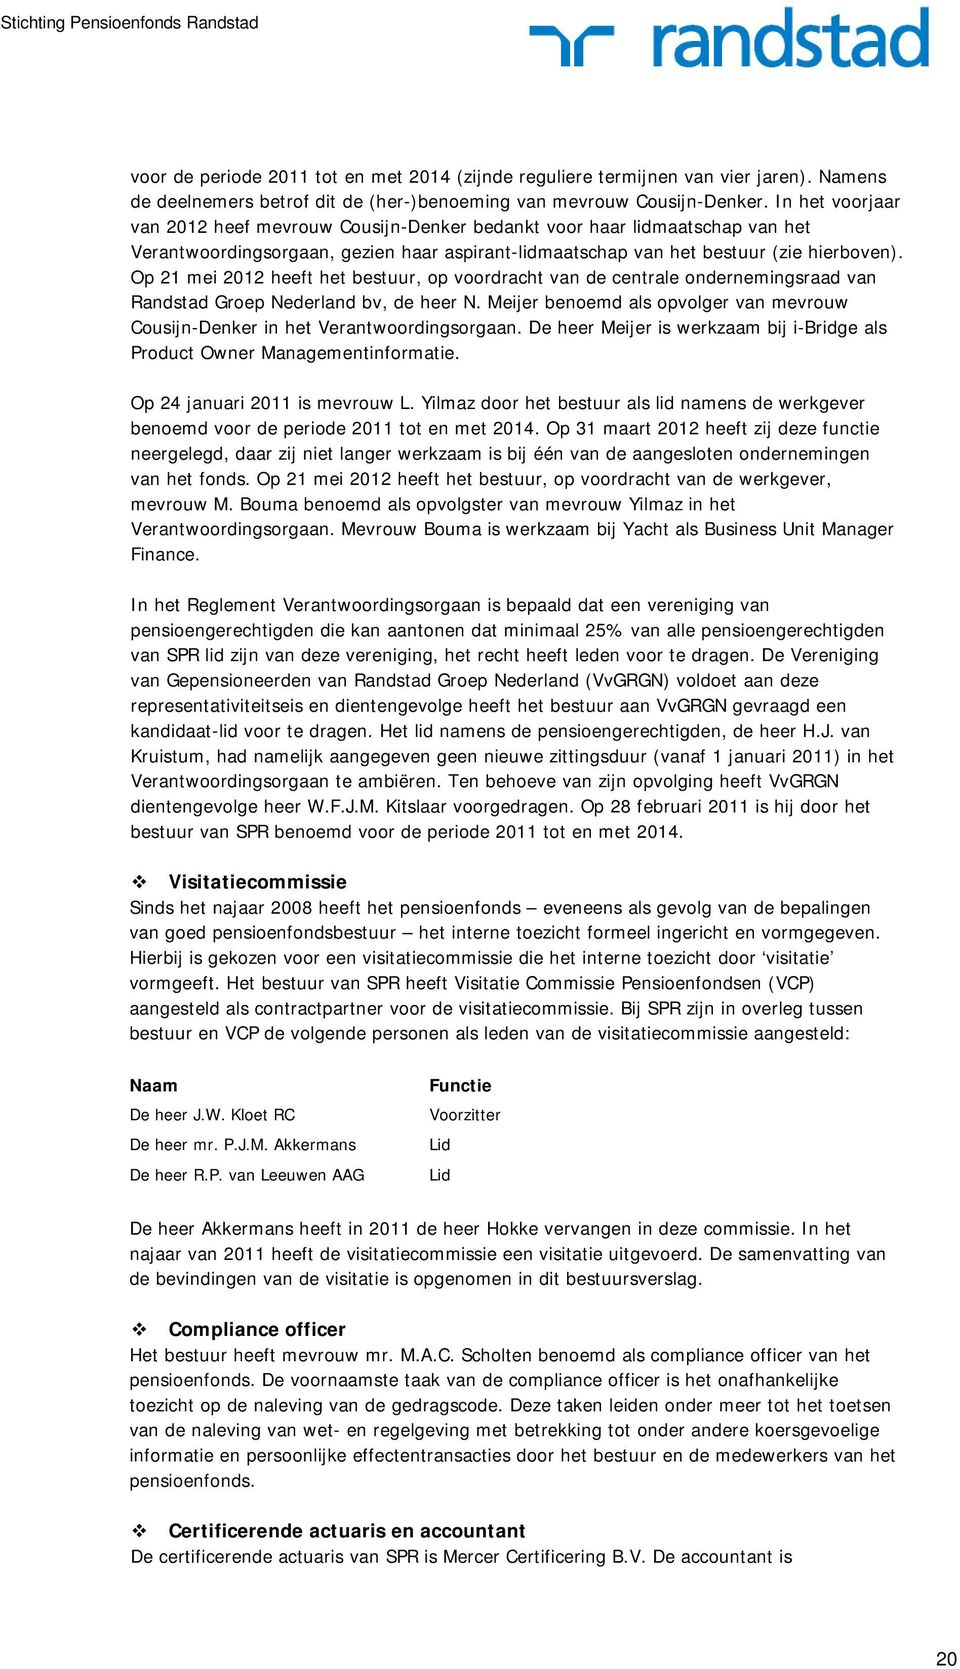 Op 21 mei 2012 heeft het bestuur, op voordracht van de centrale ondernemingsraad van Randstad Groep Nederland bv, de heer N.